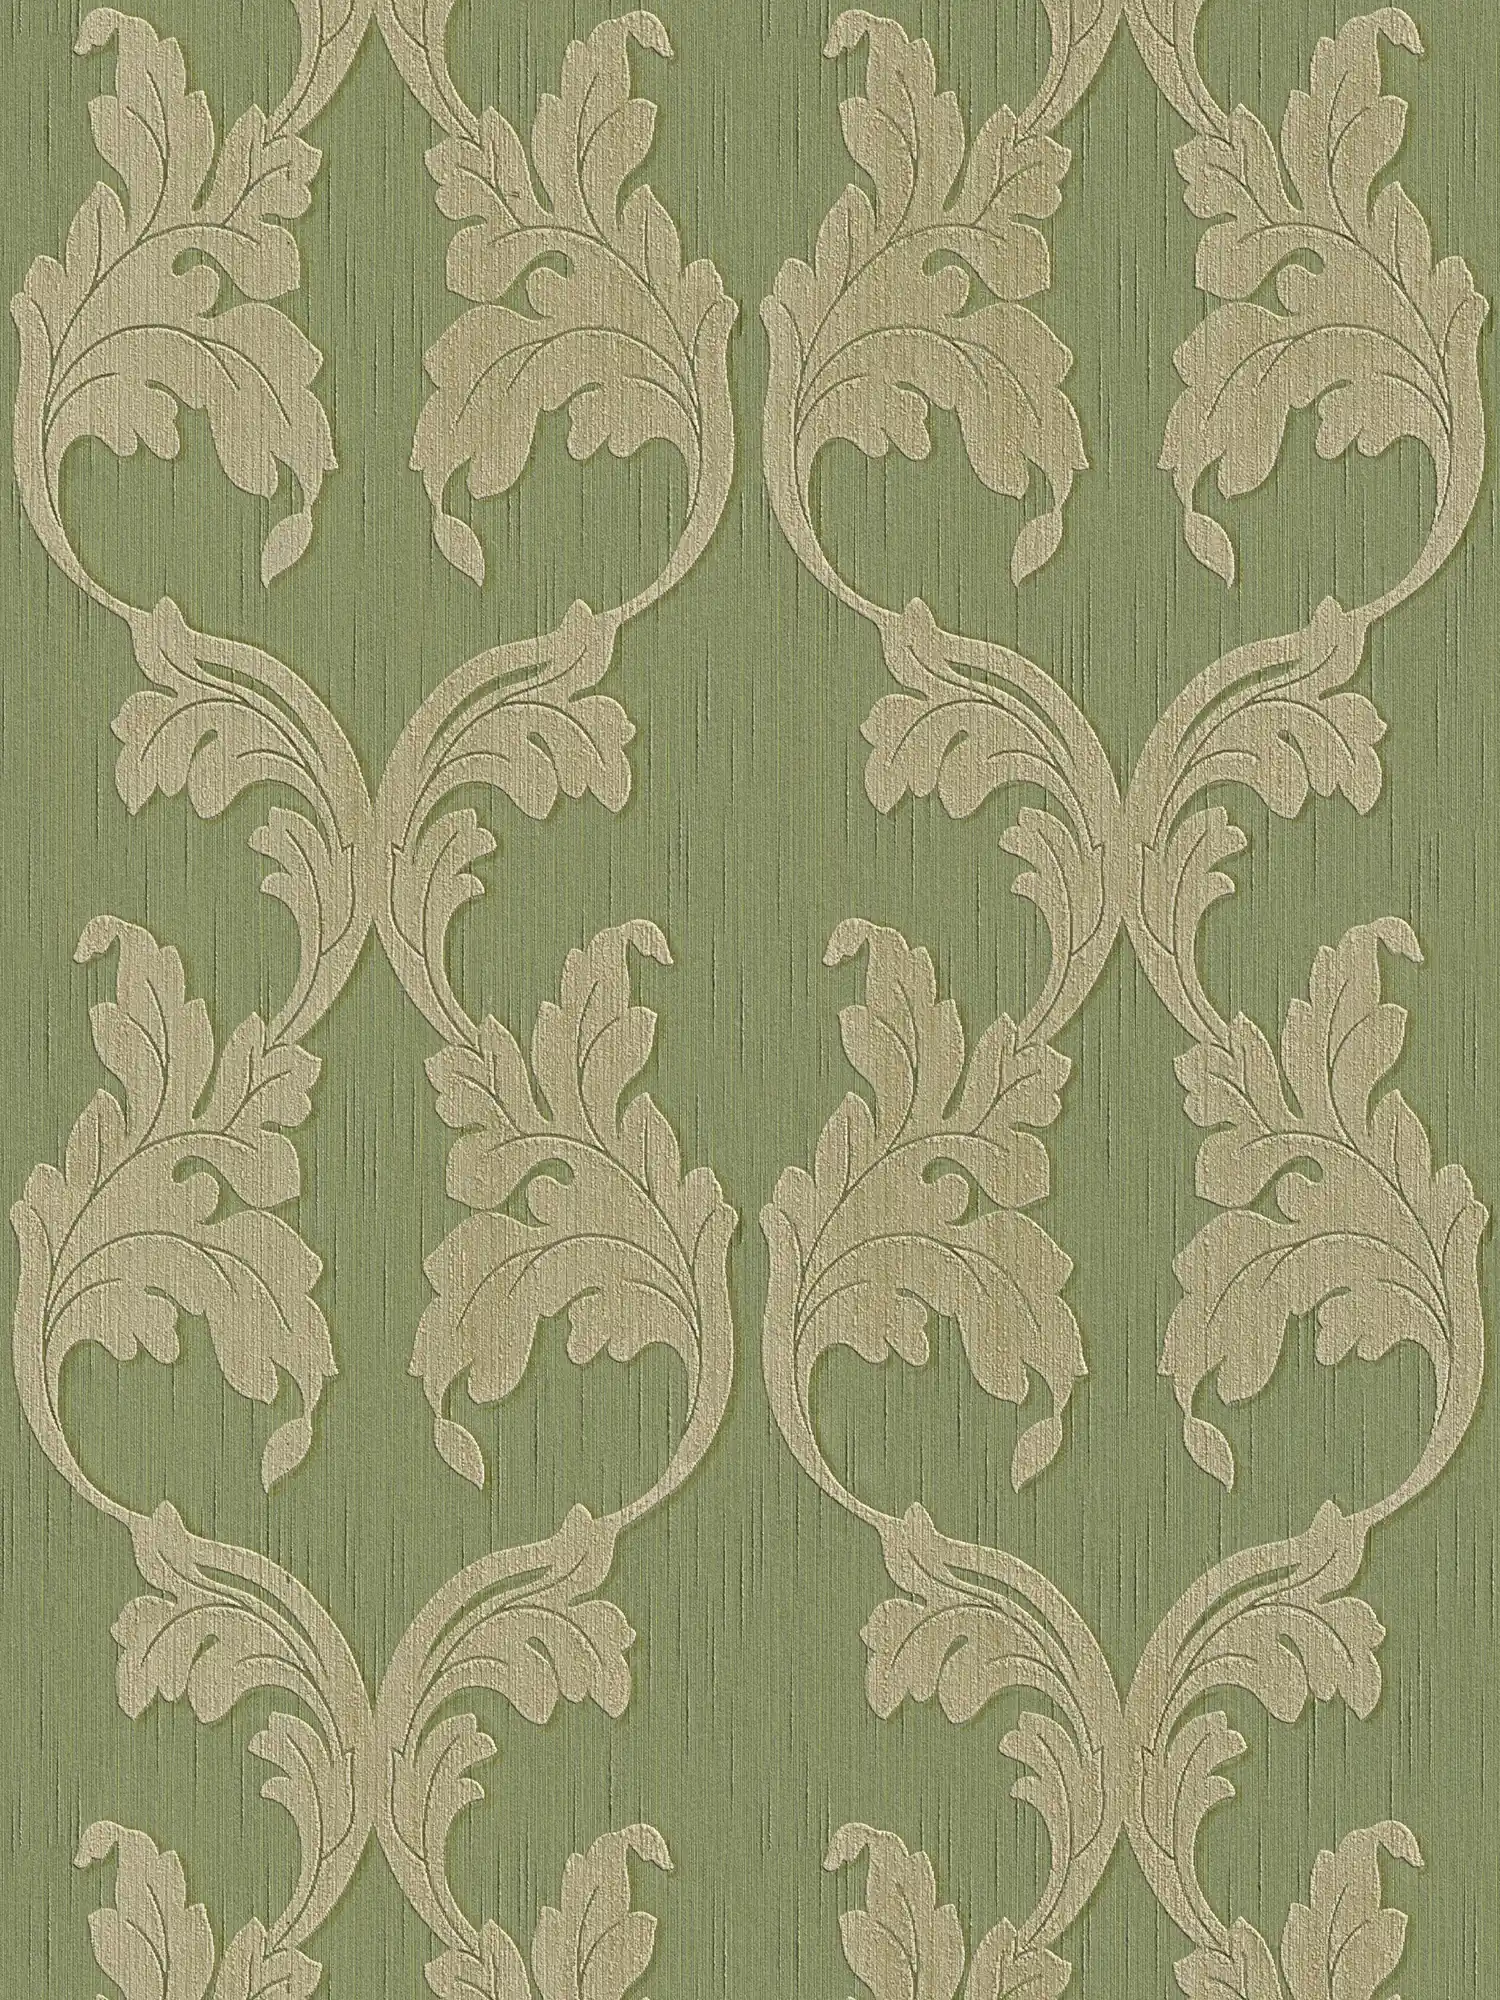 Papier peint orné de rinceaux et de motifs structurés - vert
